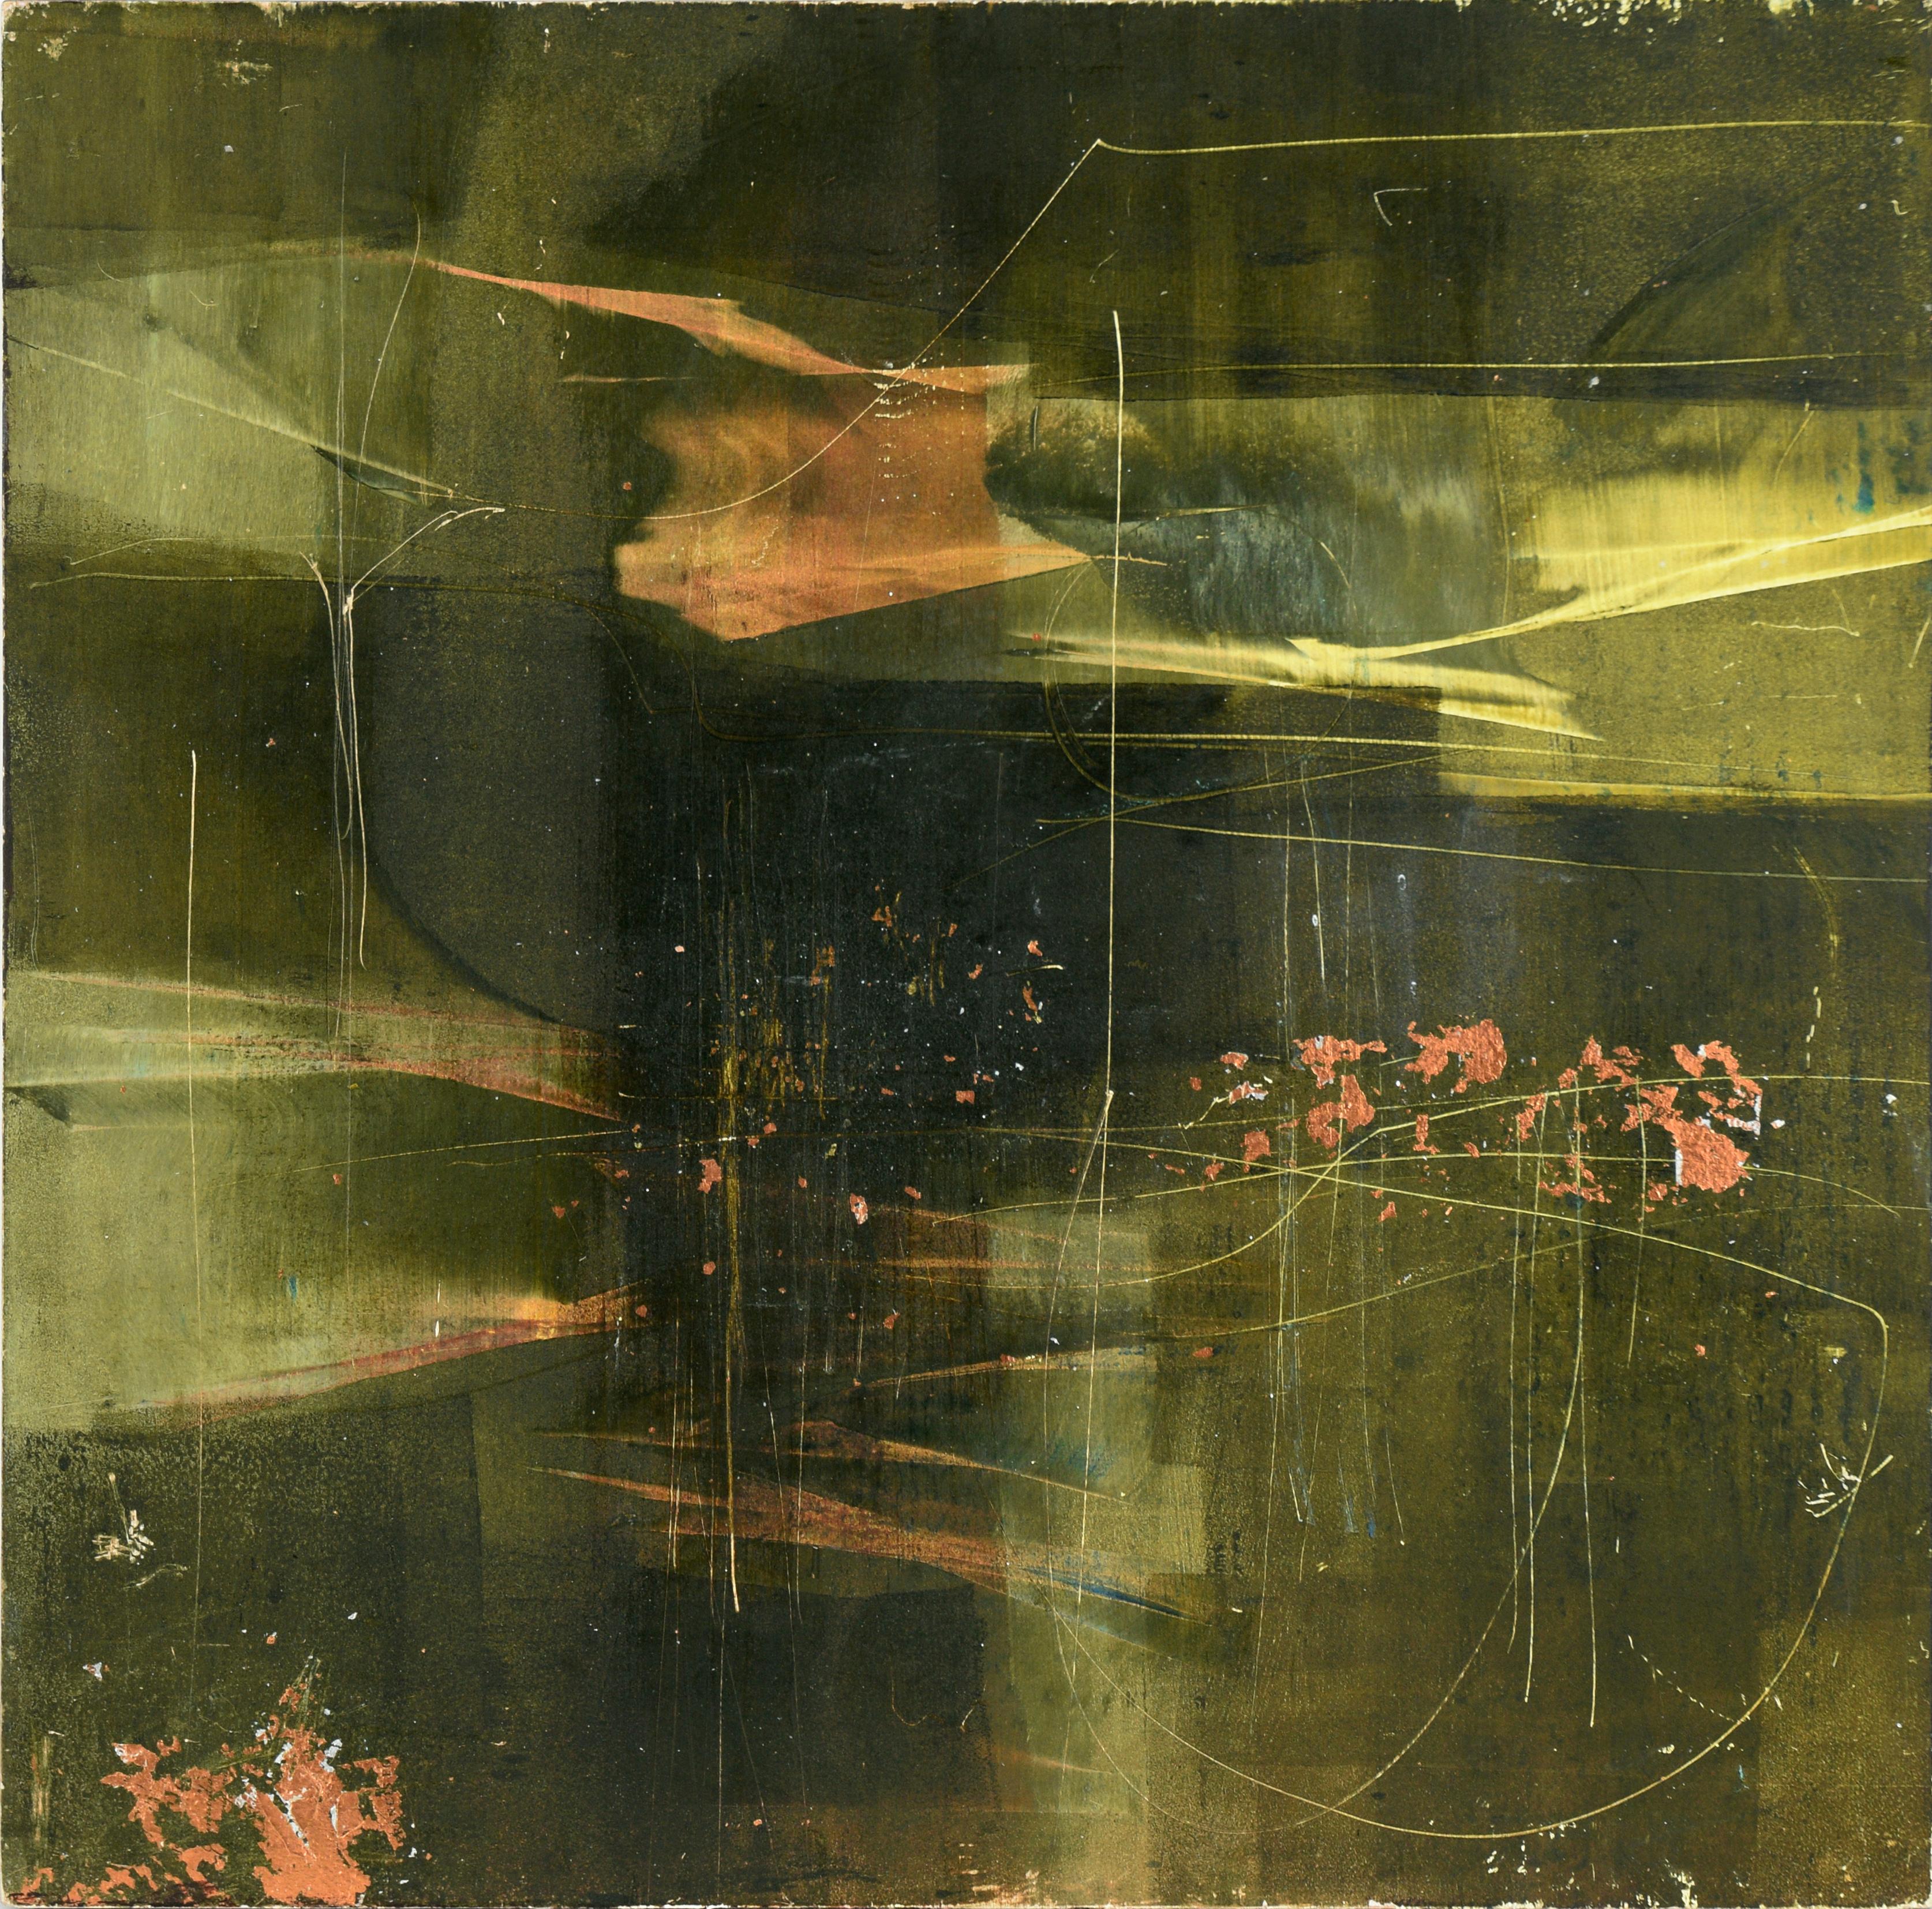 Abstract Painting Janet Trenchard - Composition abstraite River 2 en acrylique et feuille d'or sur panneau de bois